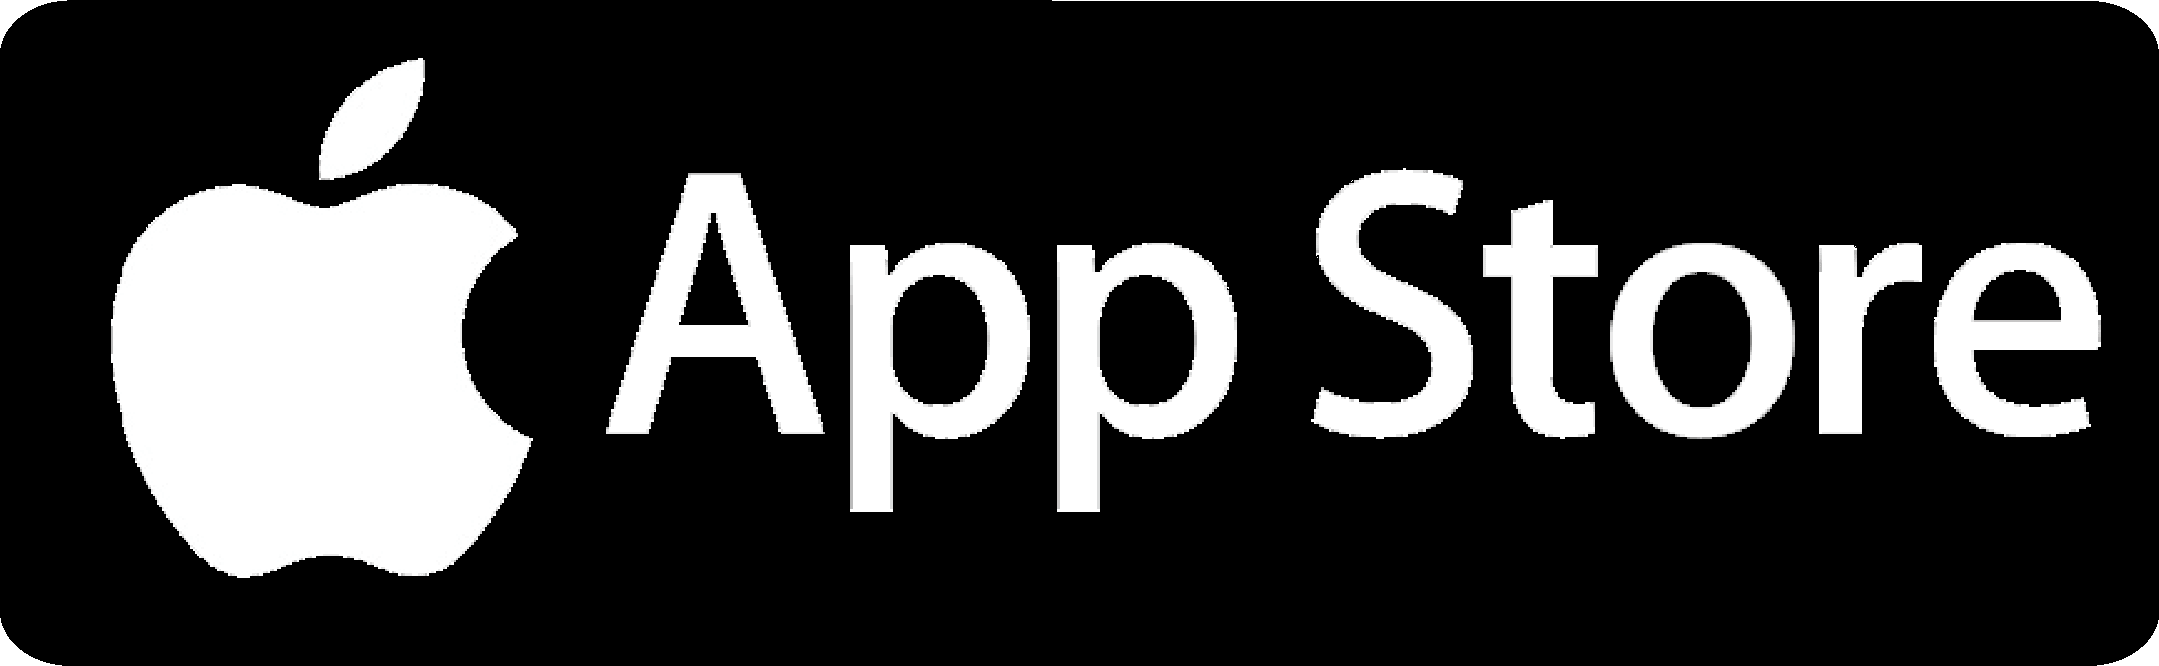 Кнопка APPSTORE. Логотип app Store. Apple Store значок. Аpp ctore.